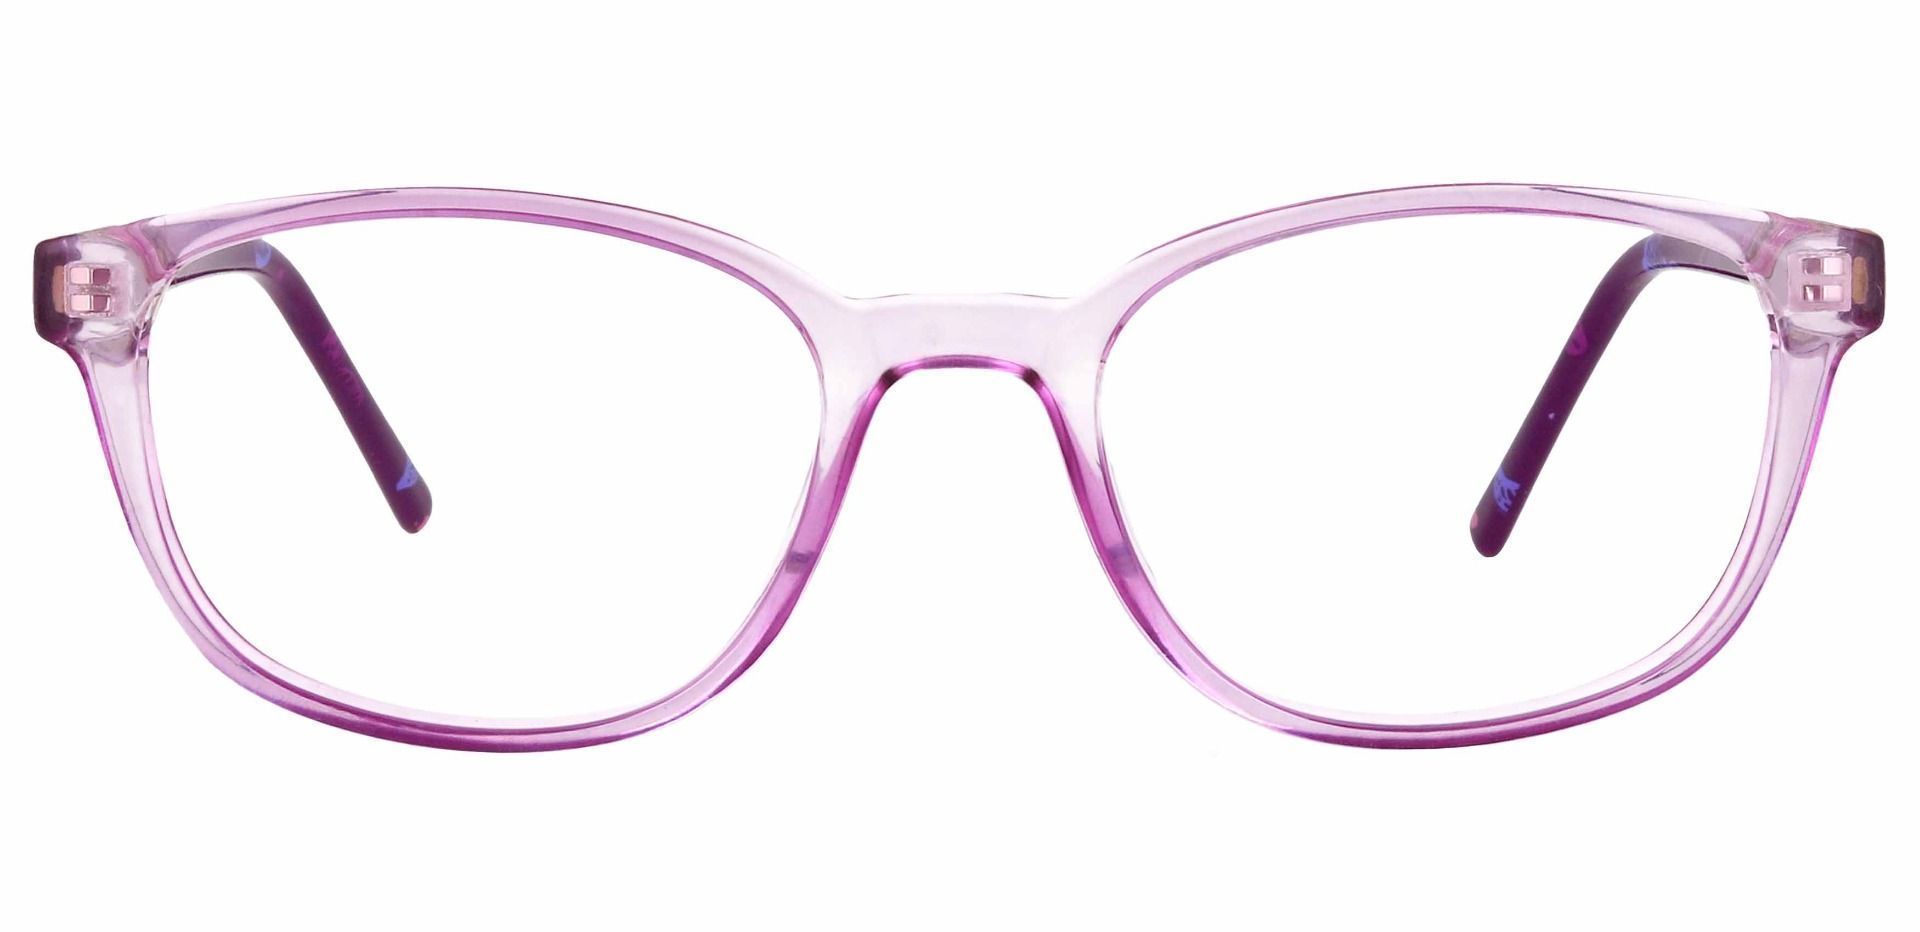 Branson Rectangle Prescription Glasses - Purple